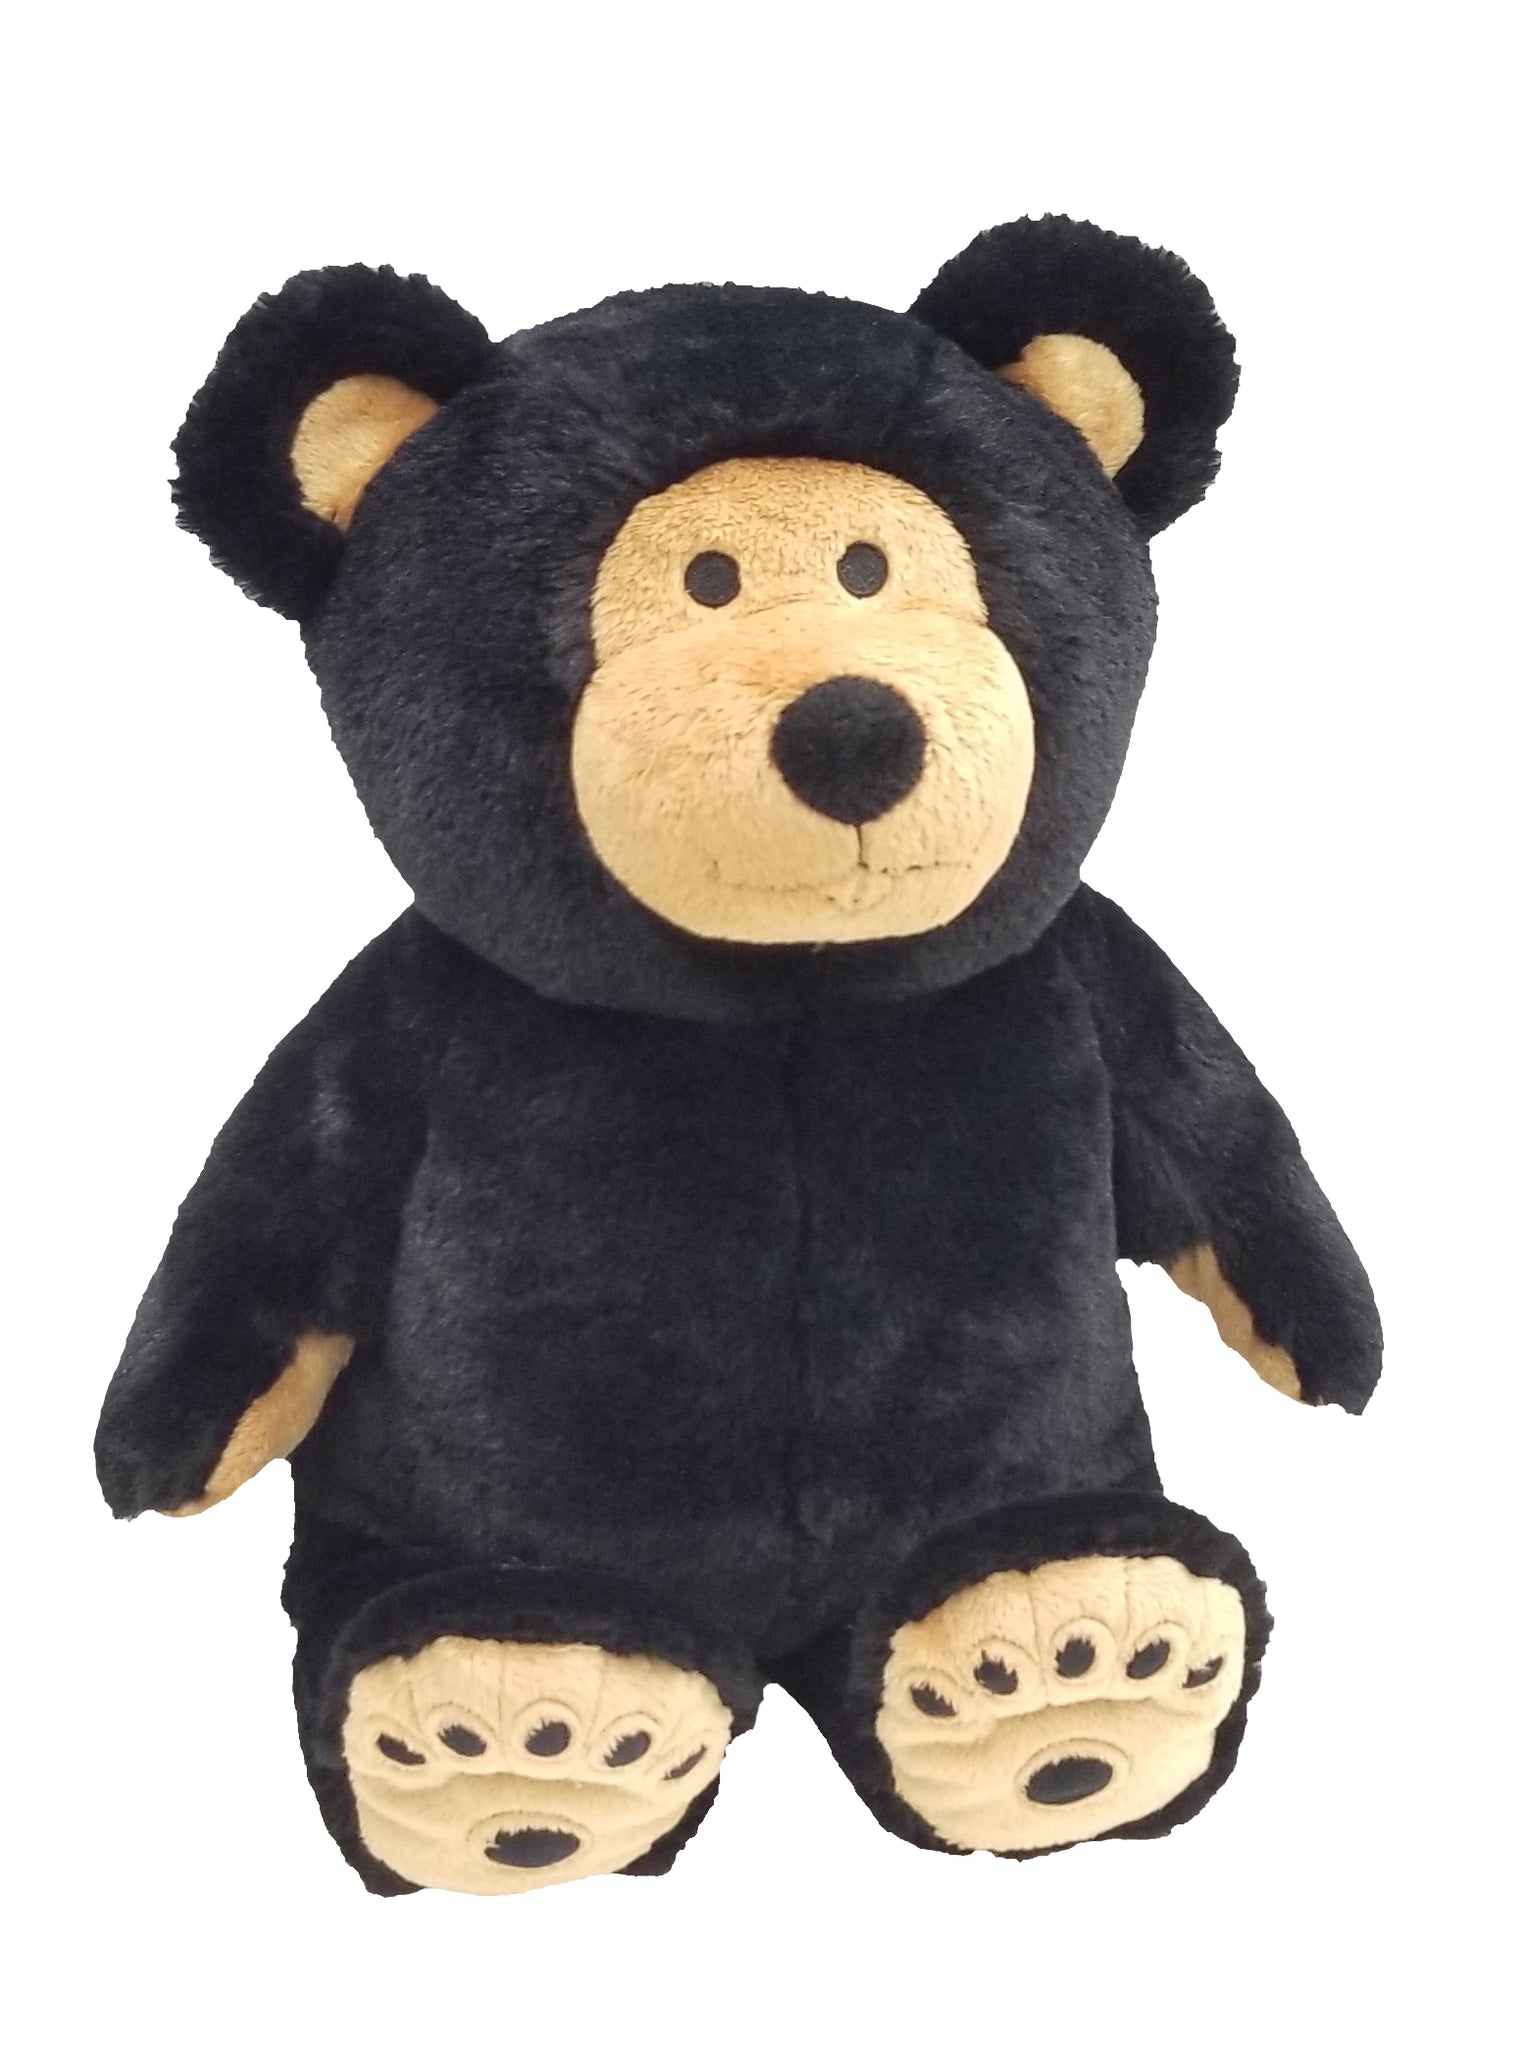 black bear teddy bear